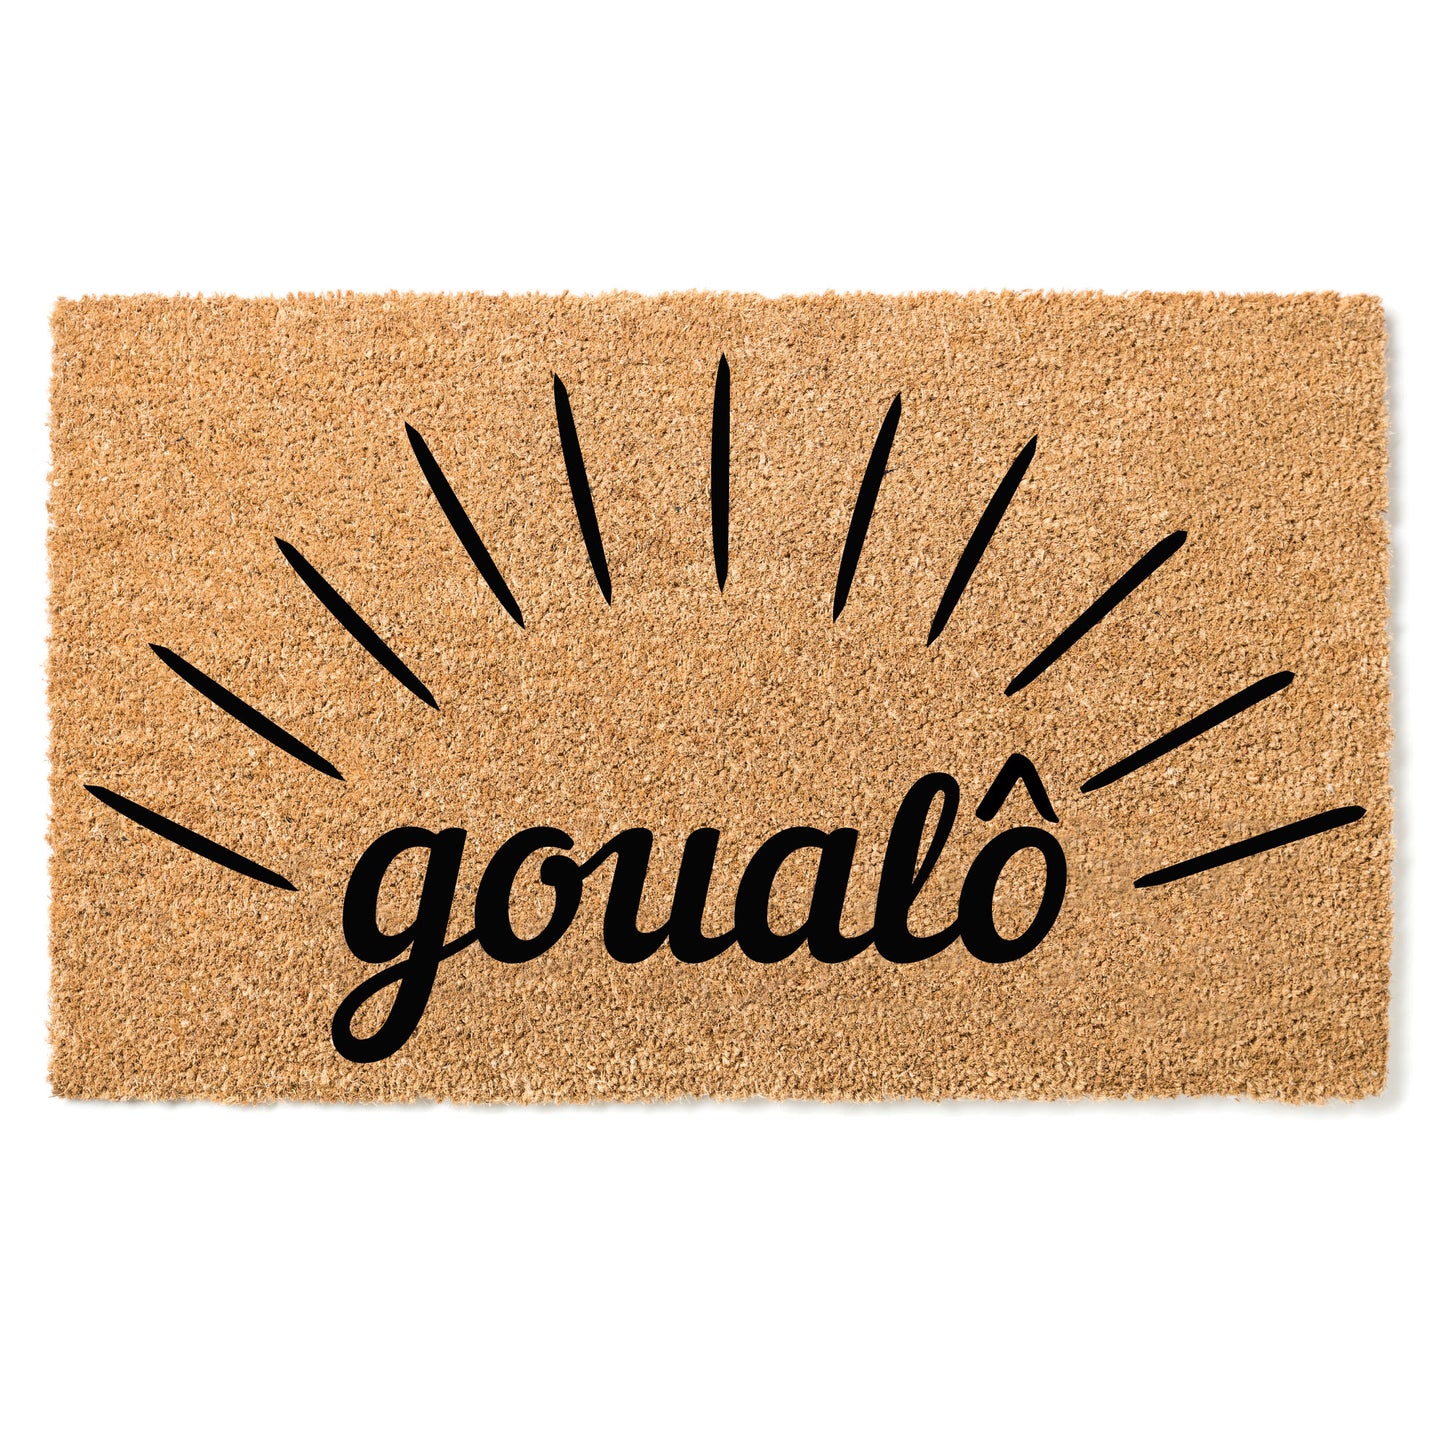 "Goualô" door mat - Greeting in Koulango